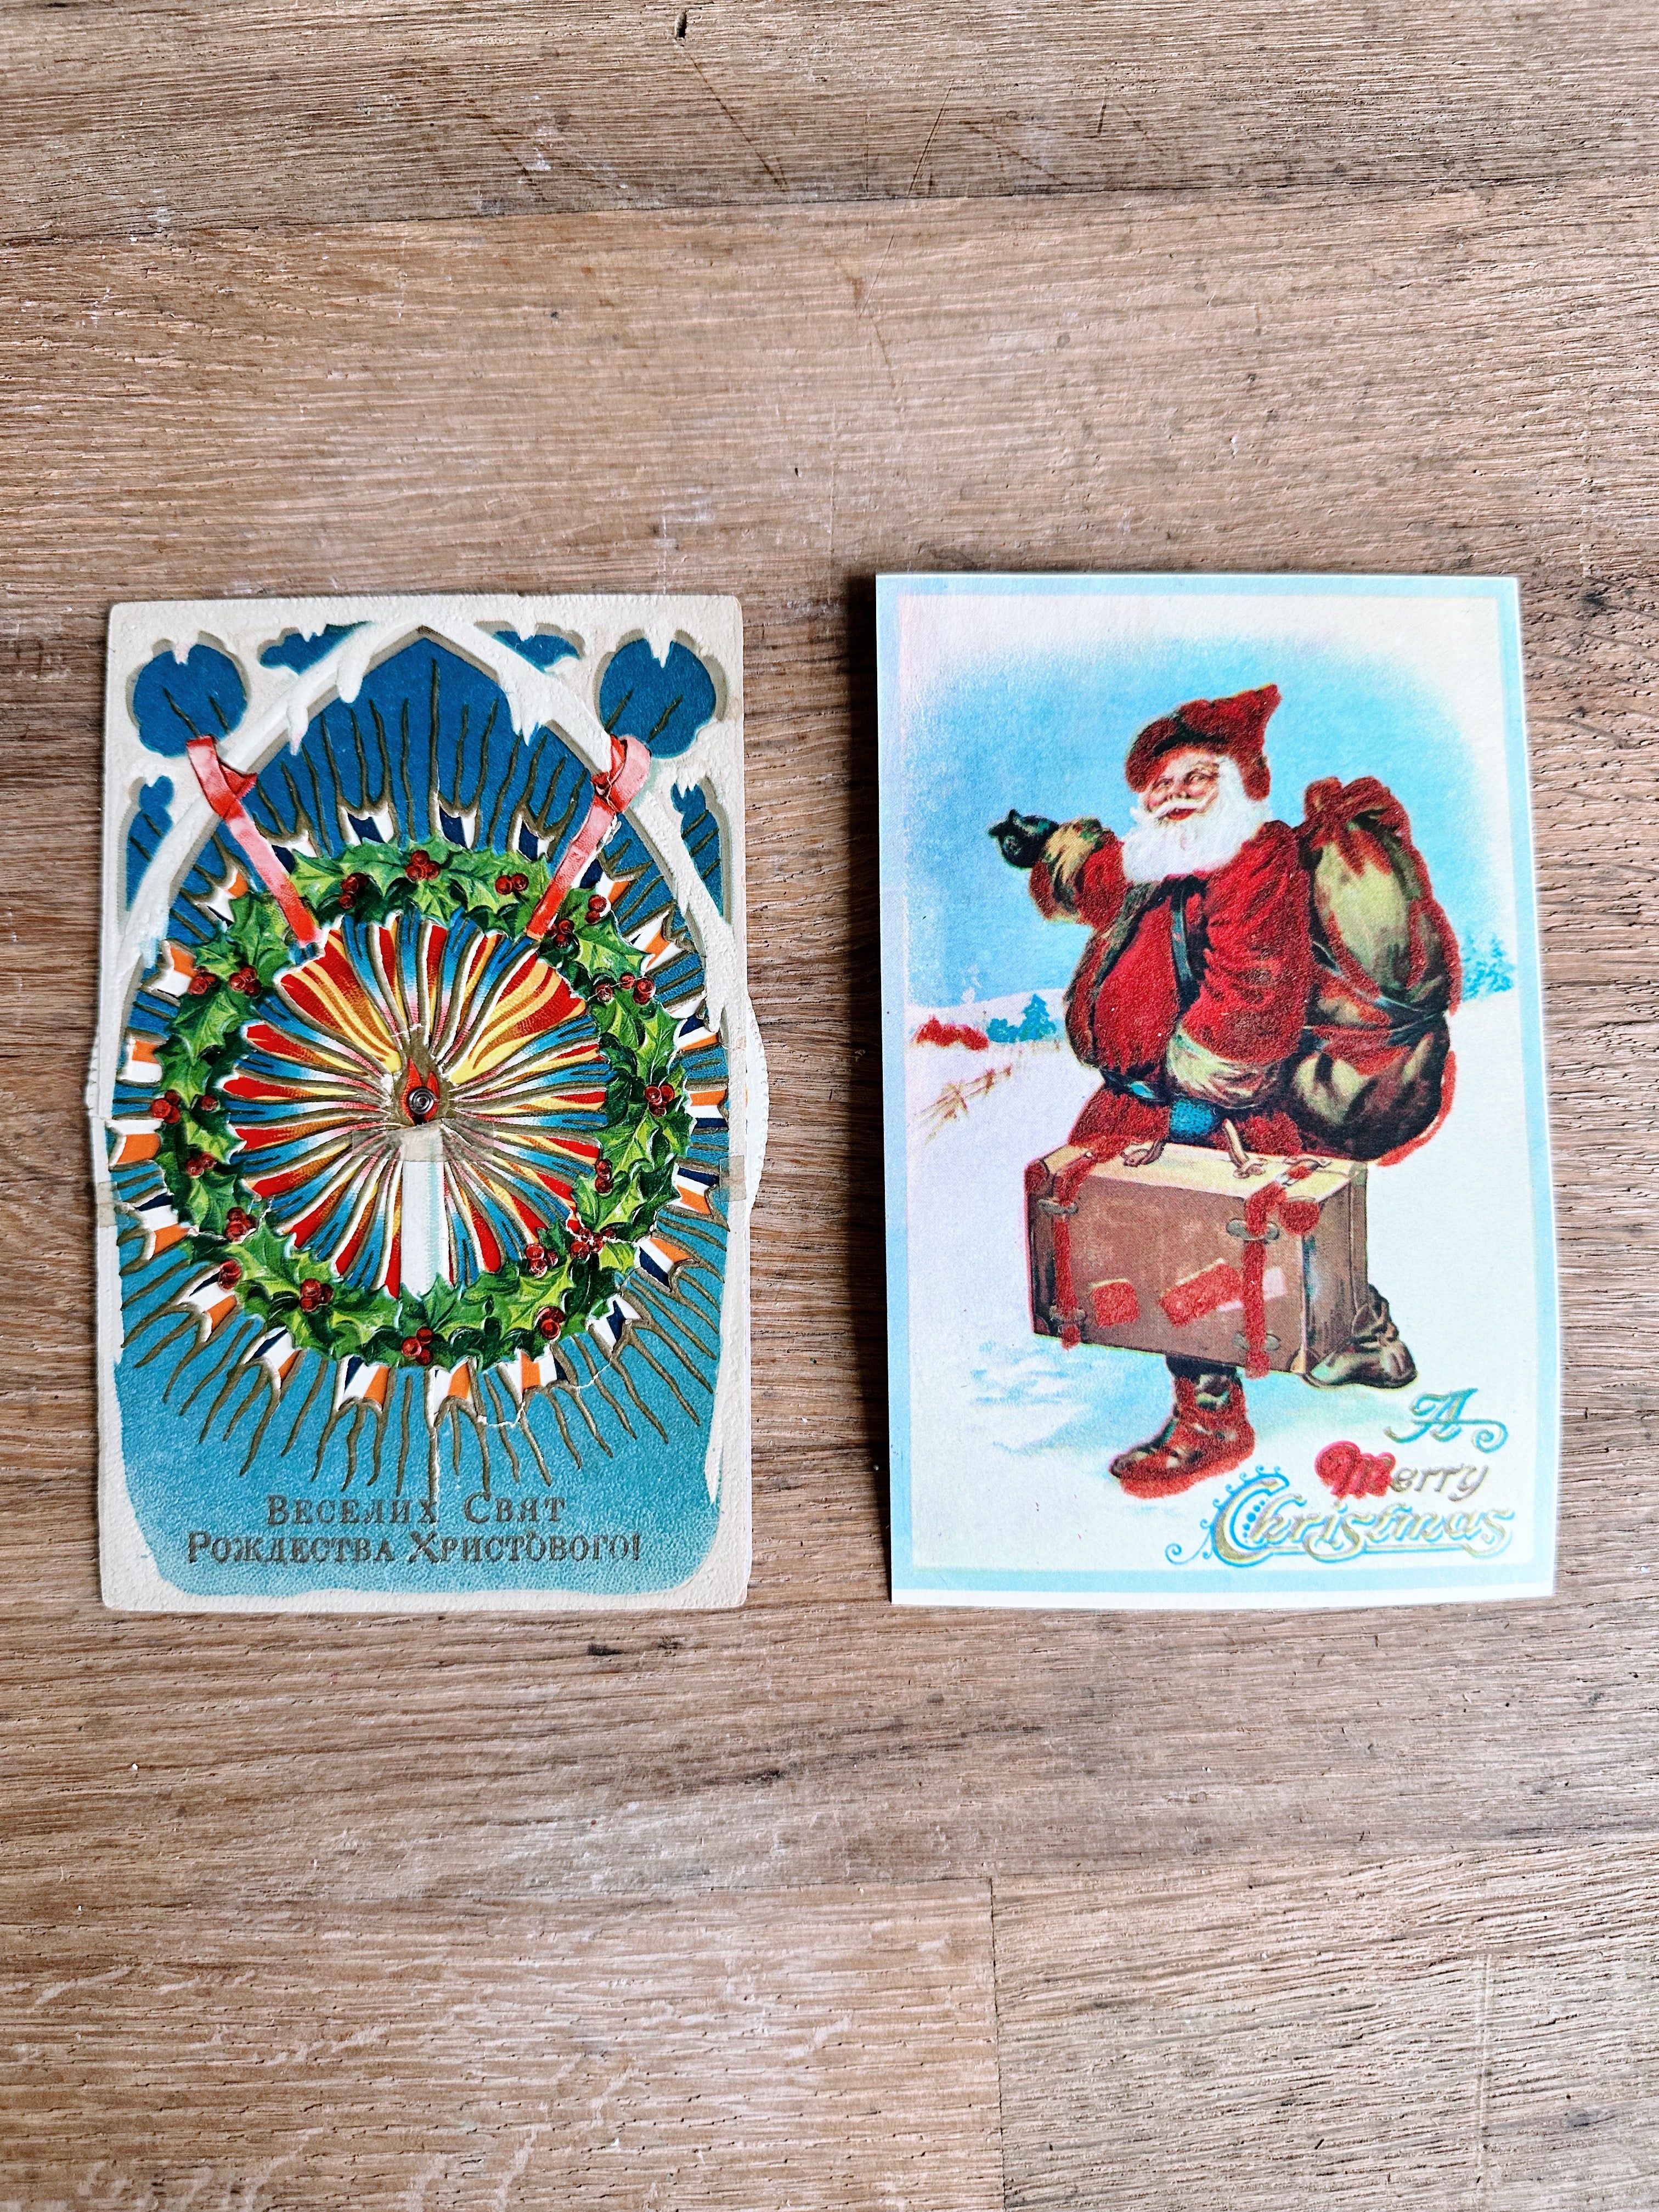 Vintage Chip Holder/Christmas Card Holder with Two Vintage Postcards